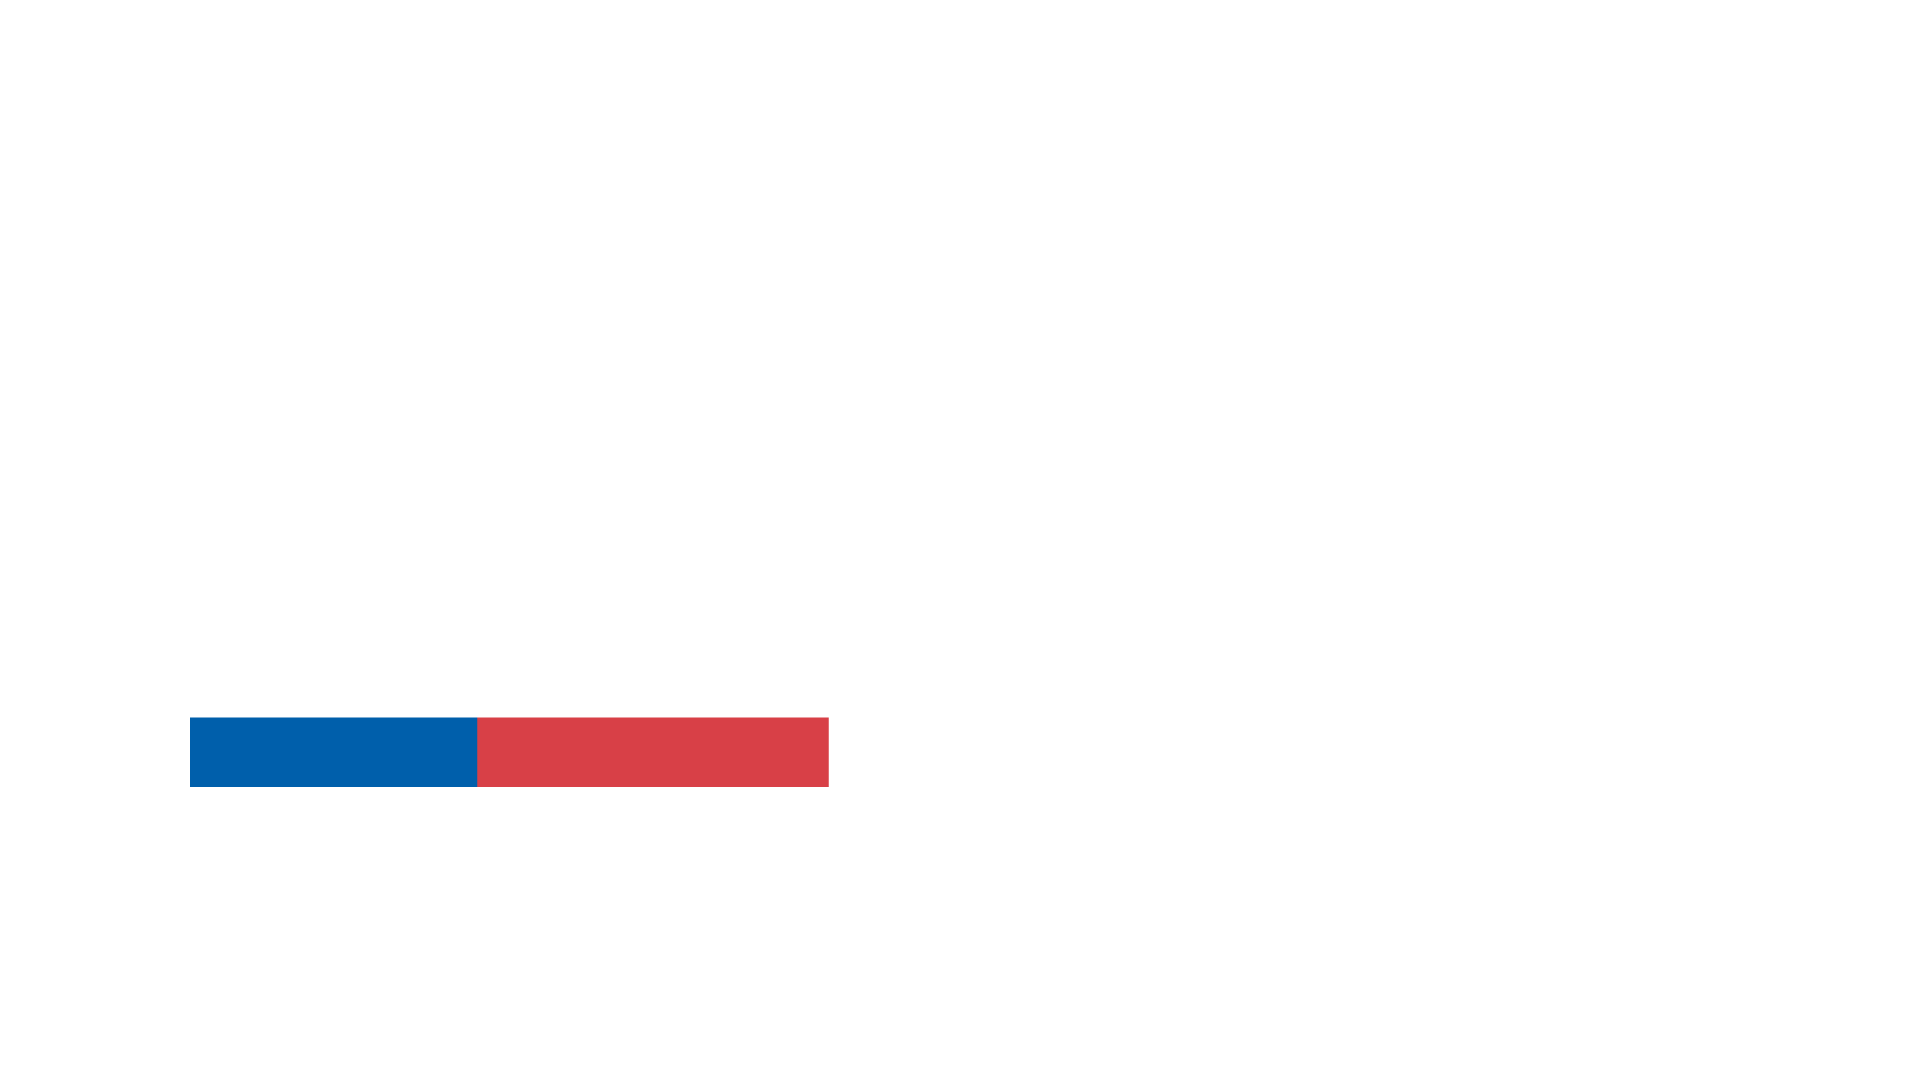 Corfo